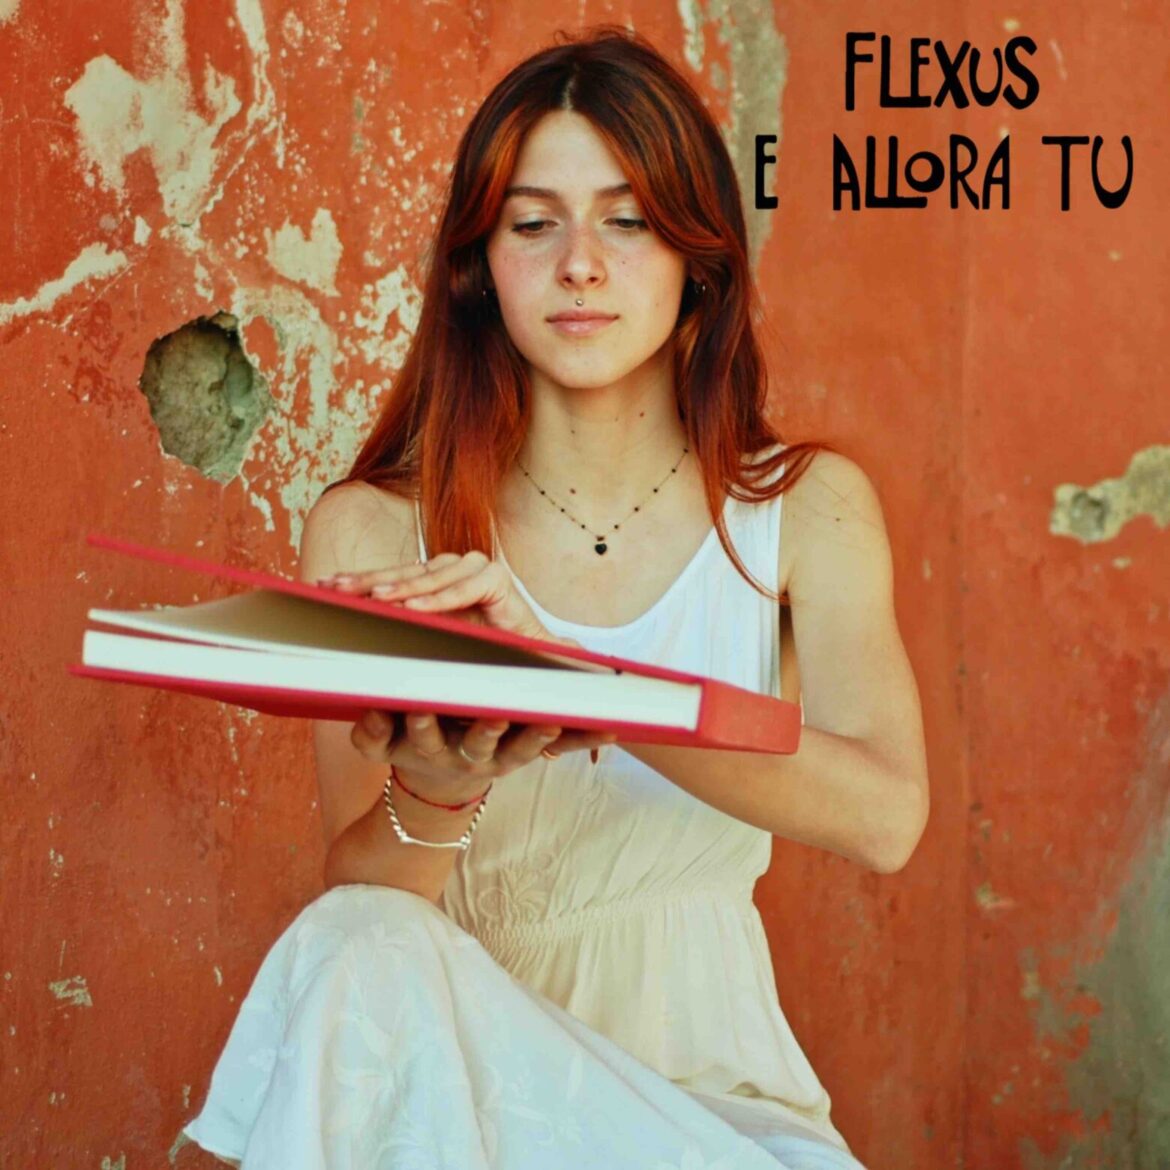 Flexus: domani in radio “E allora tu”, il nuovo singolo della band emiliana